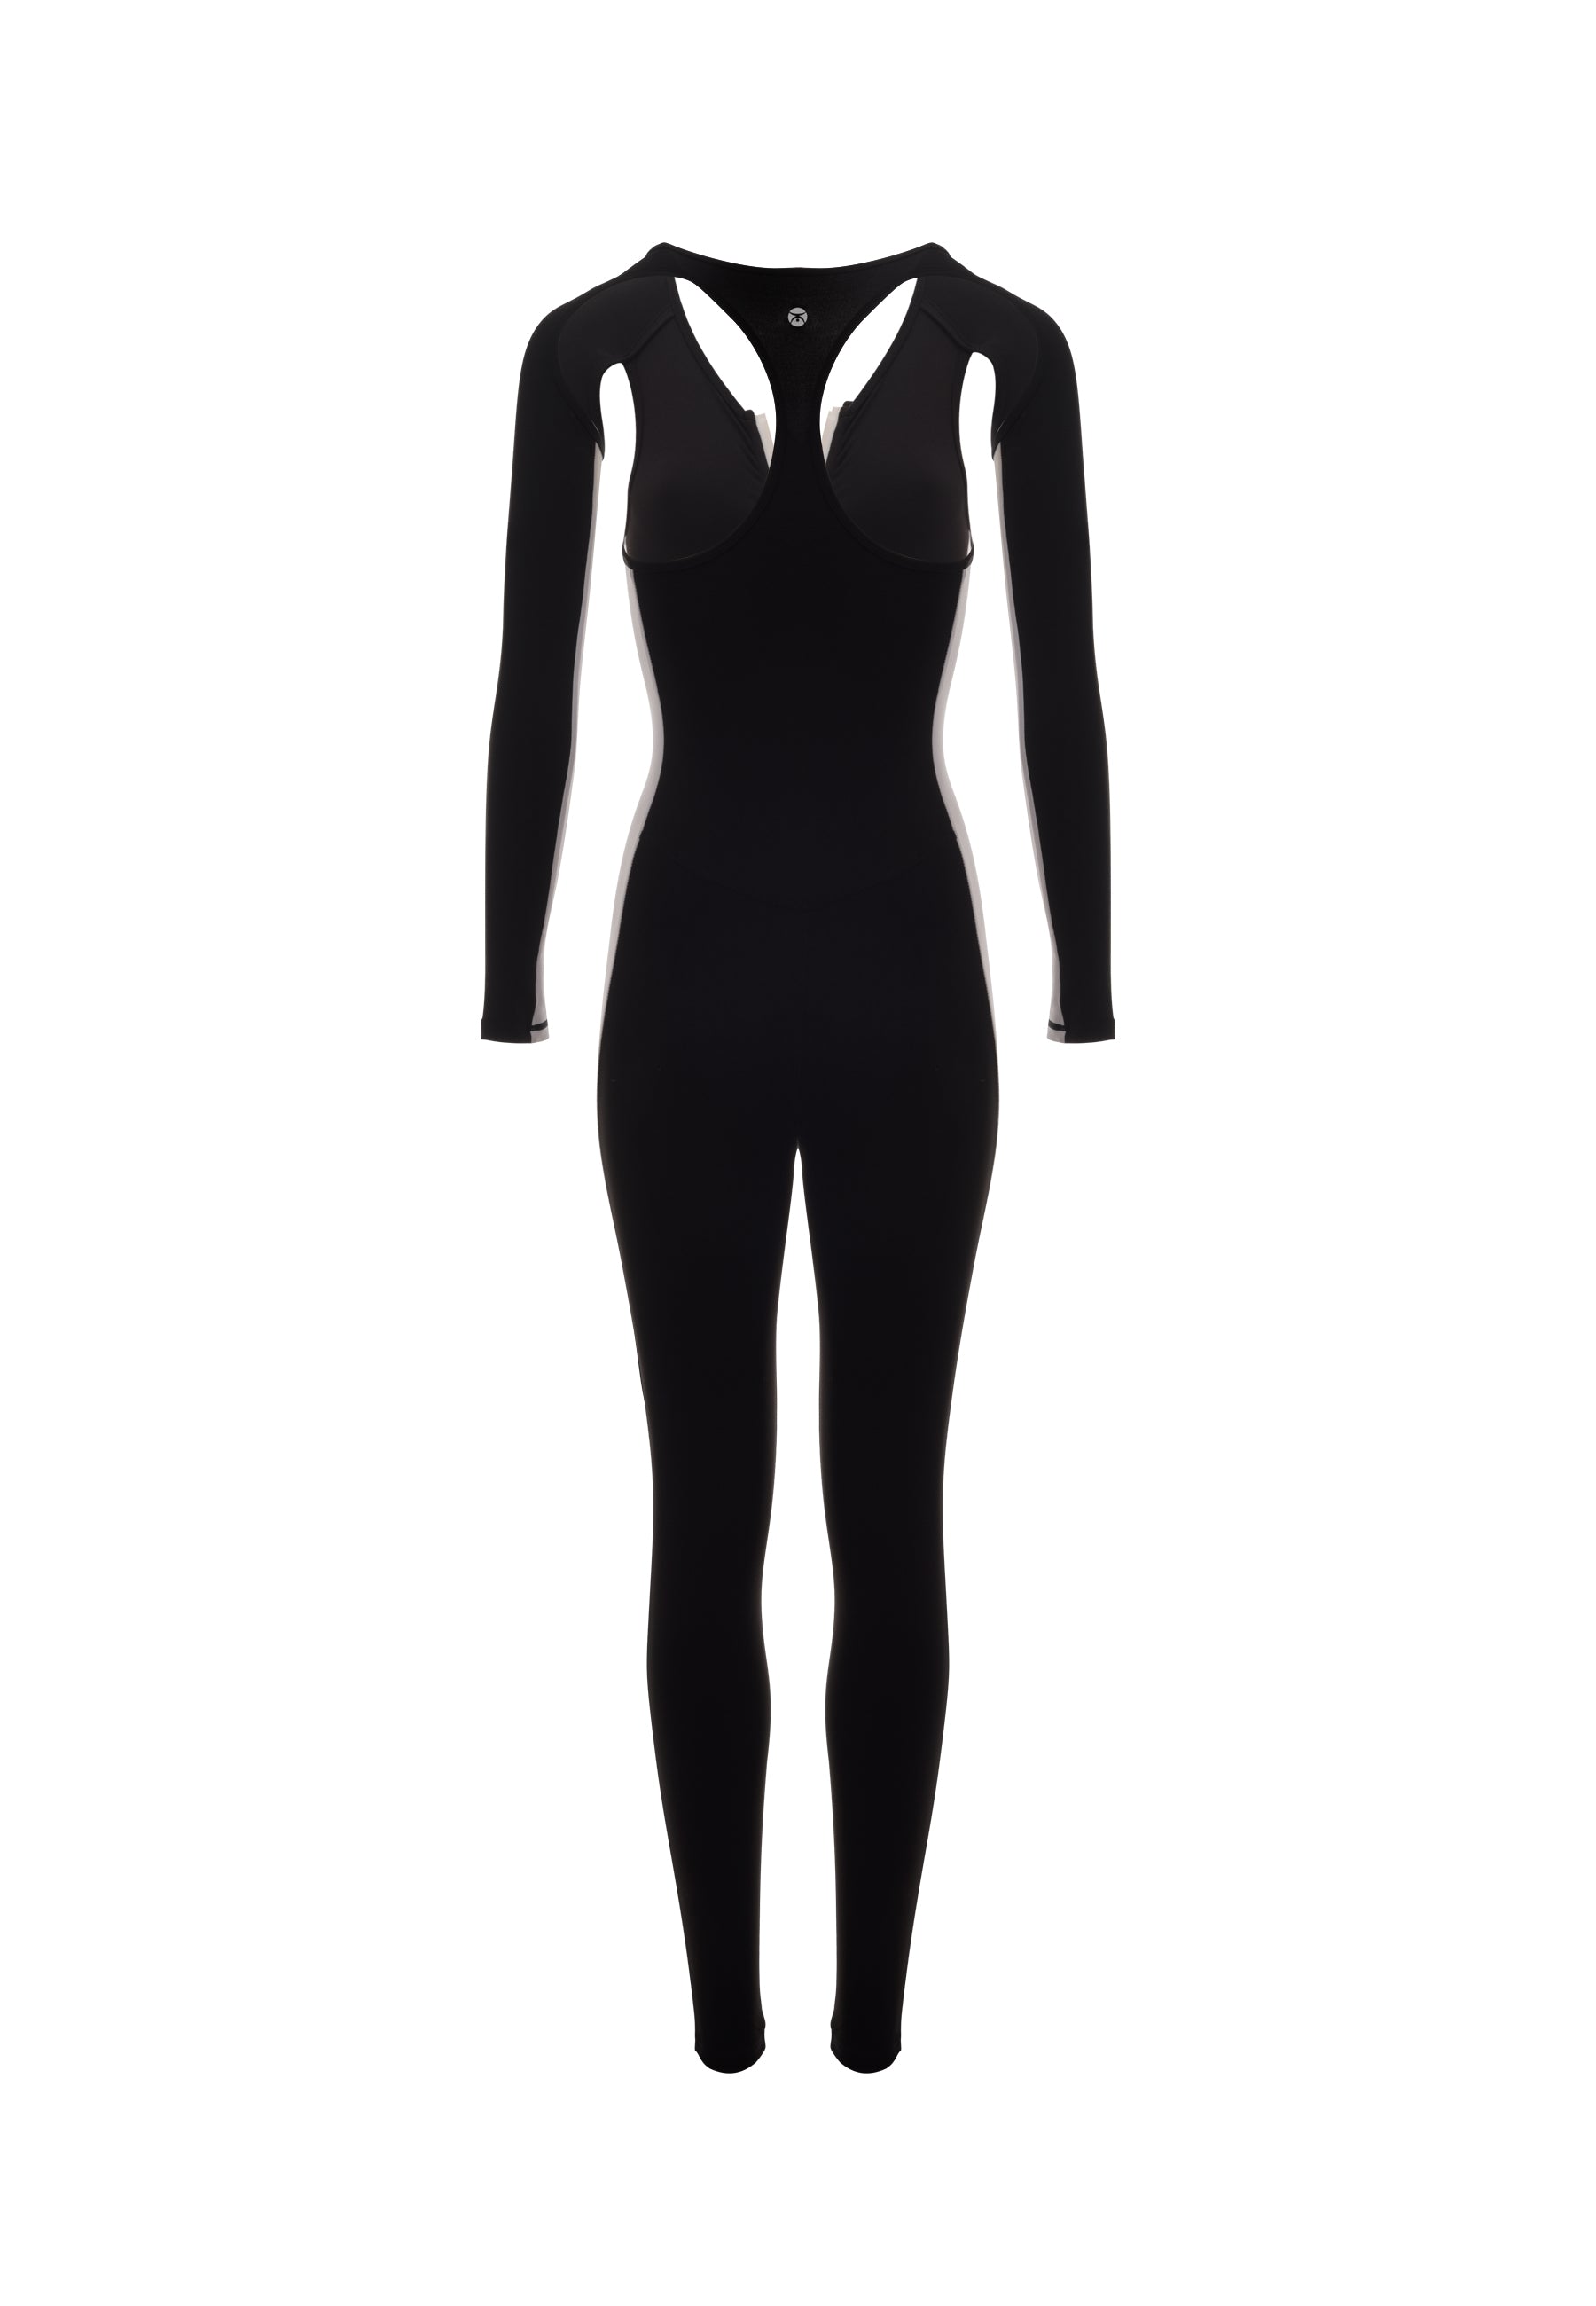 XTREM Bodysuit - YantraConnection